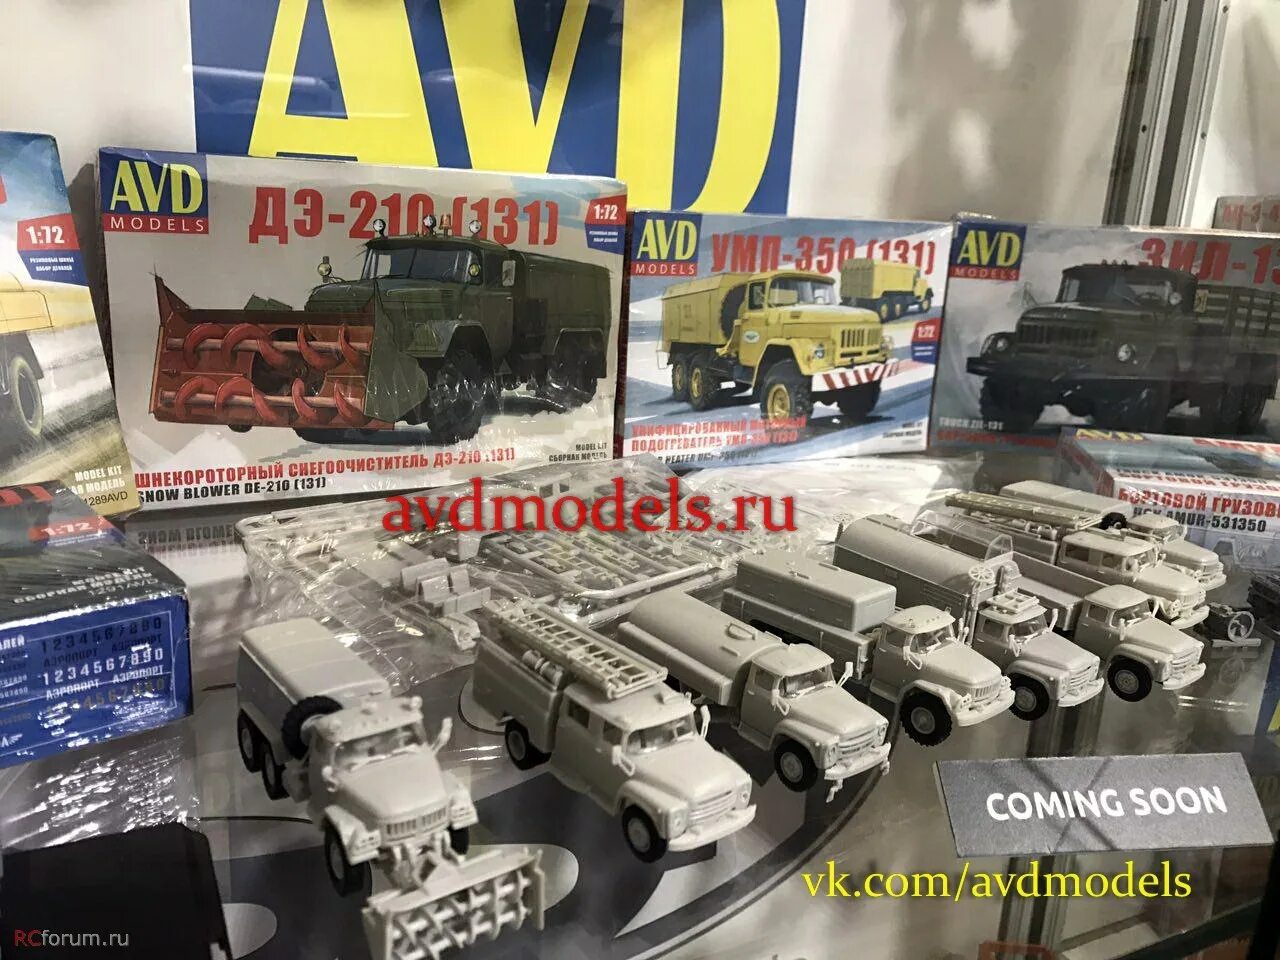 Модели avd models. ЗИЛ 131 AVD models. КРАЗ 1/72 AVD models. Модель КАМАЗ 1 72 масштаб AVD models. AVD models 1/72.